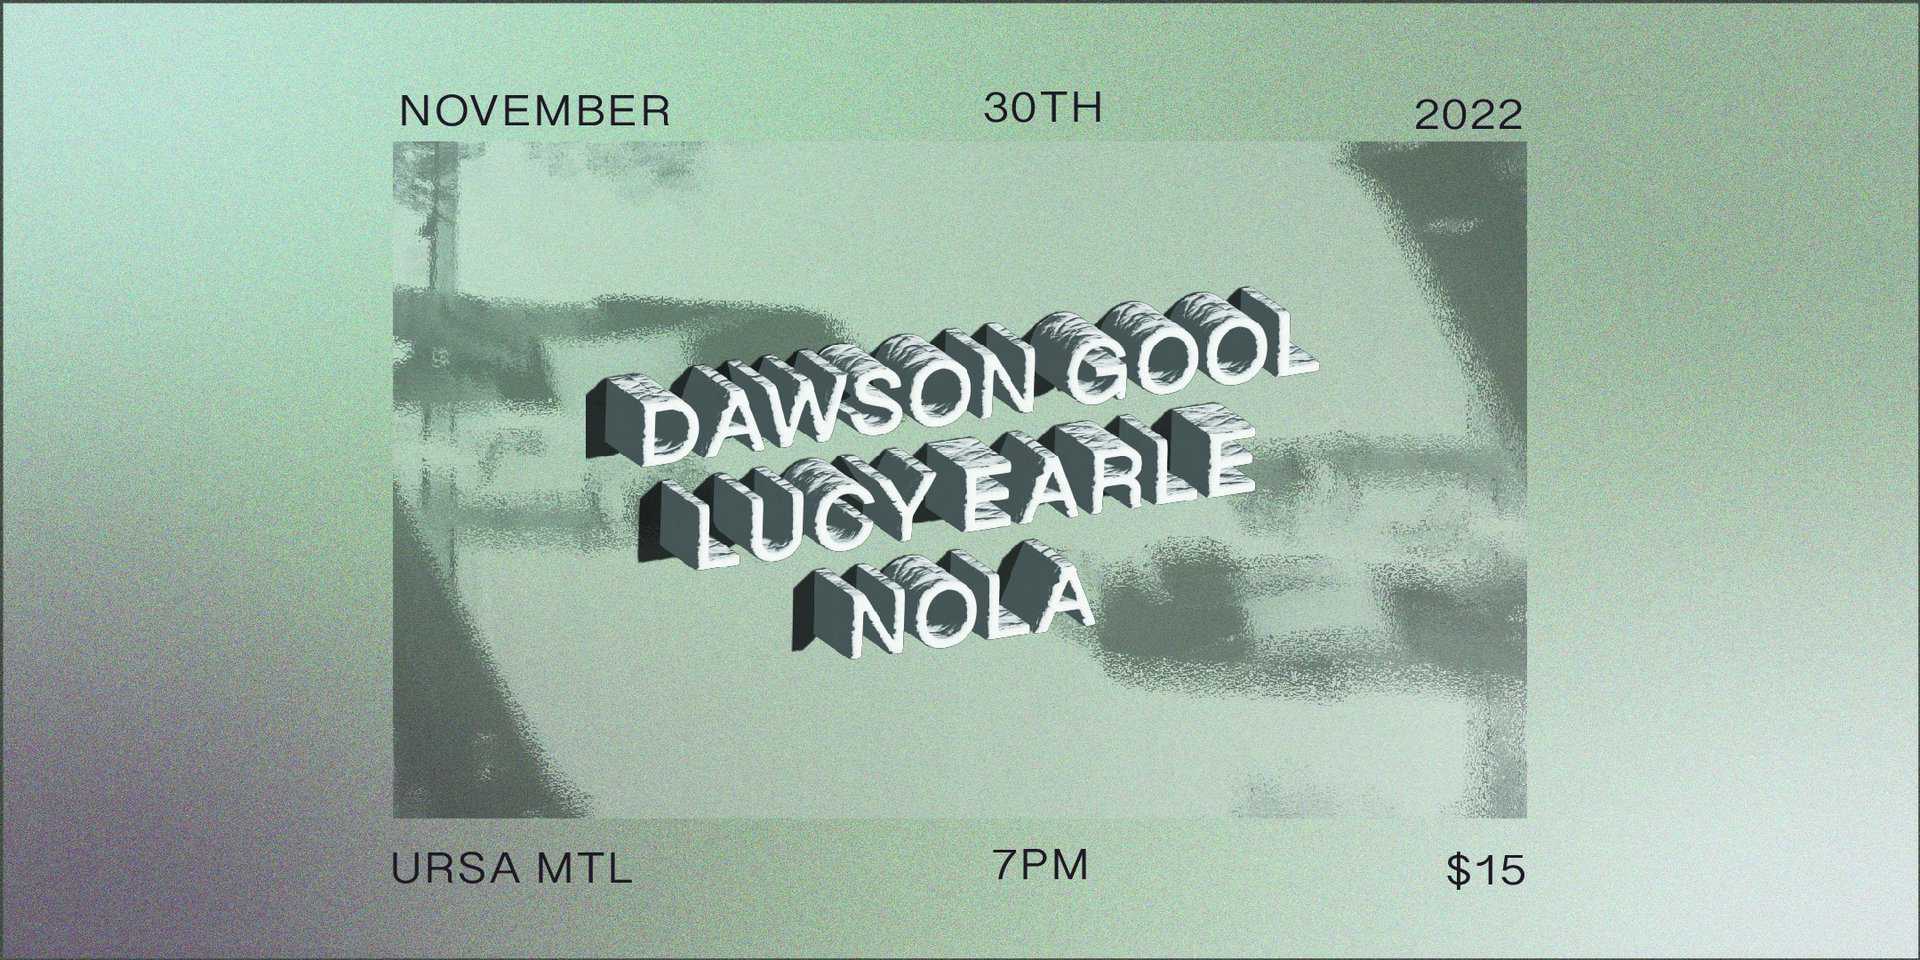 Dawson Gool + Lucy Earle + Nola